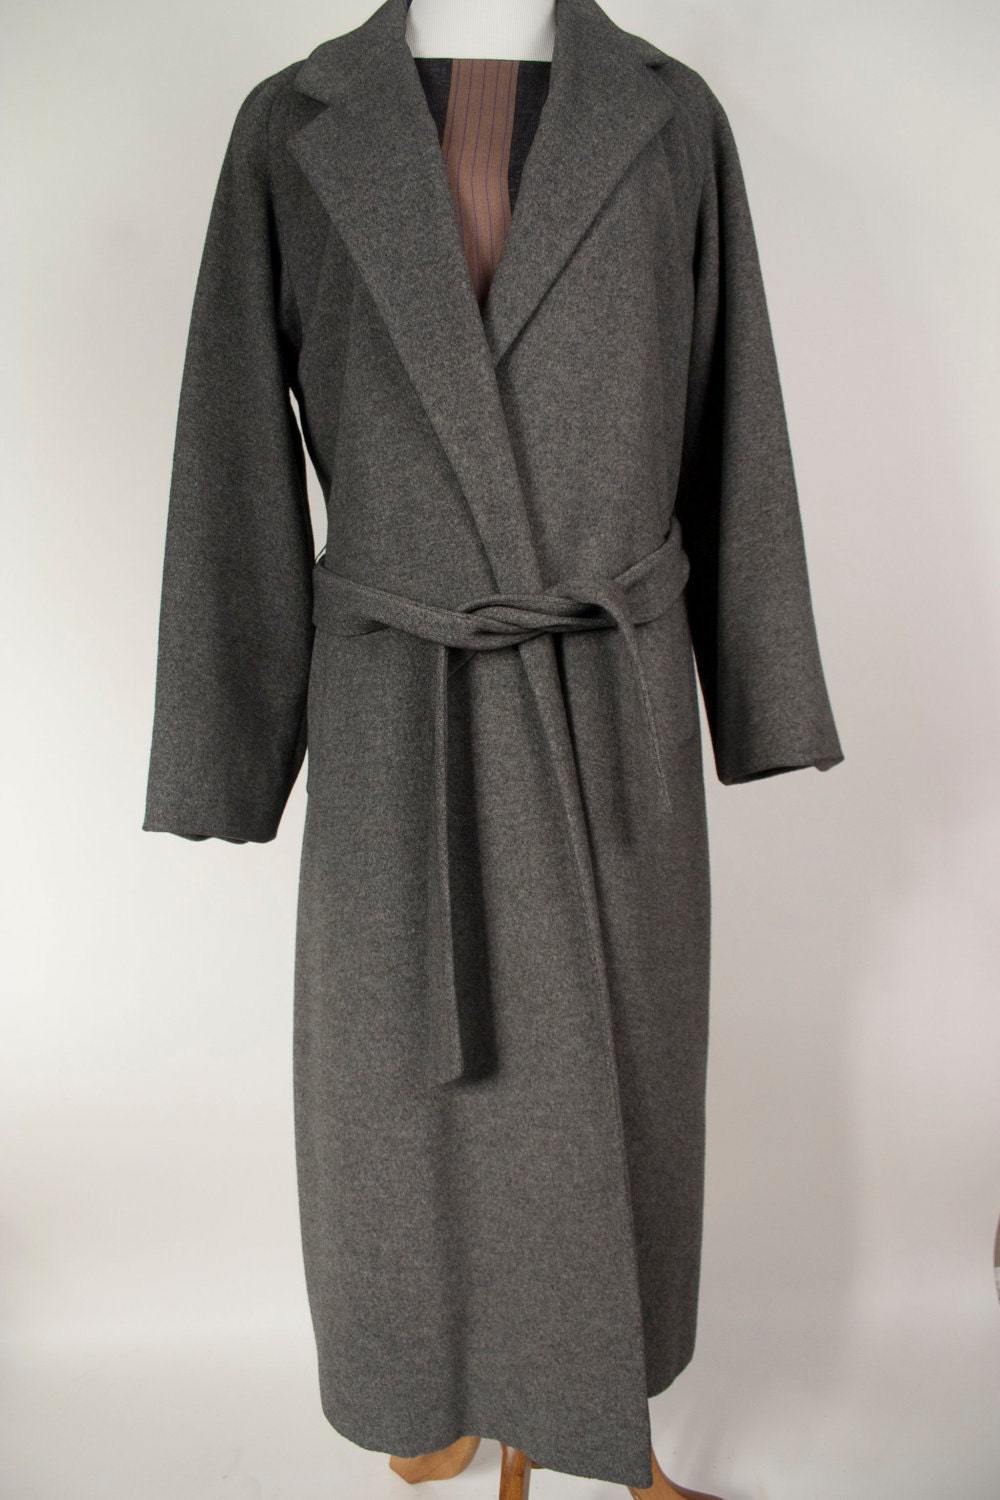 SALE Vintage coat / Regency cashmere coat / by MonkeyTreeVintage